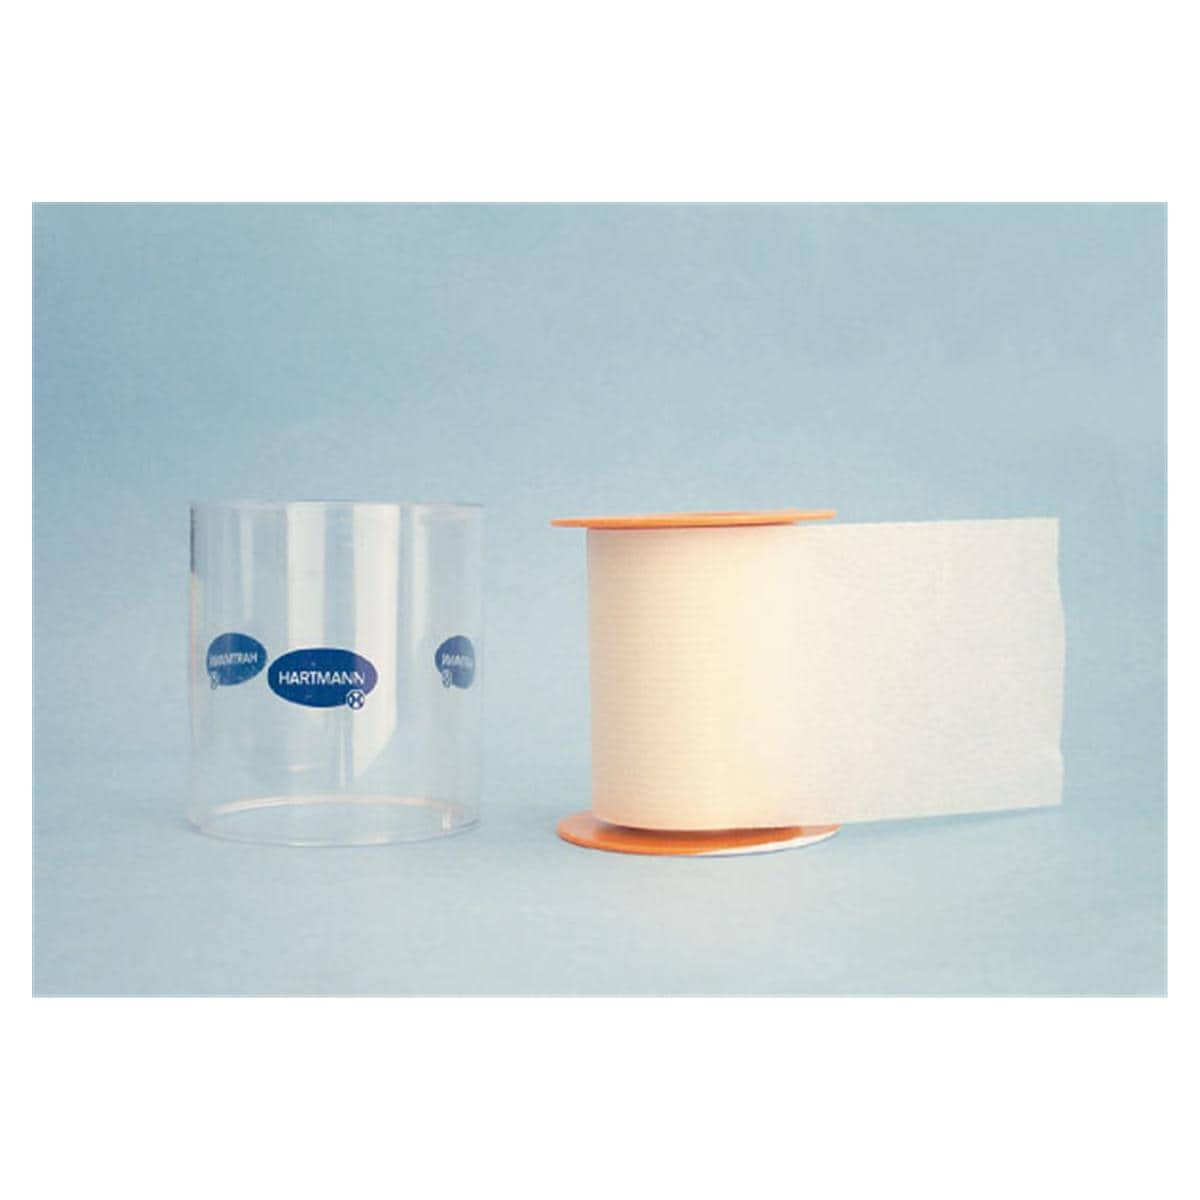 ESPARADRAPO OMNIPOR - De papel hipoalergénico Blanco - 5 cm x 9,2 m - 1 Unidad